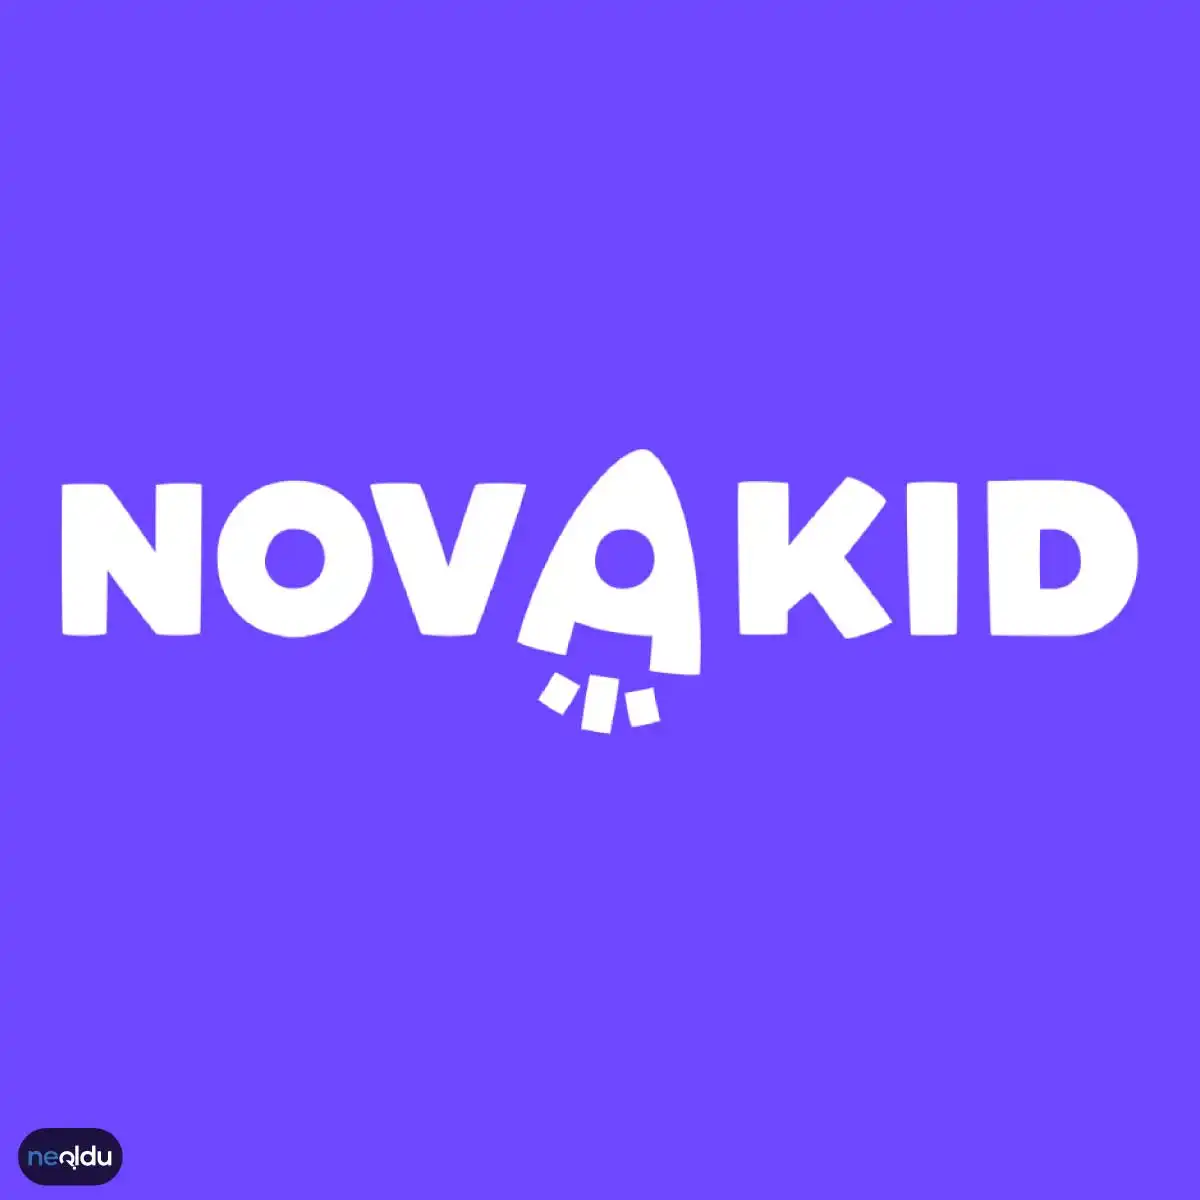 Новой кид. Новакид английский. Novakid школа английского языка. Novakid английский для детей. Novakid логотип.